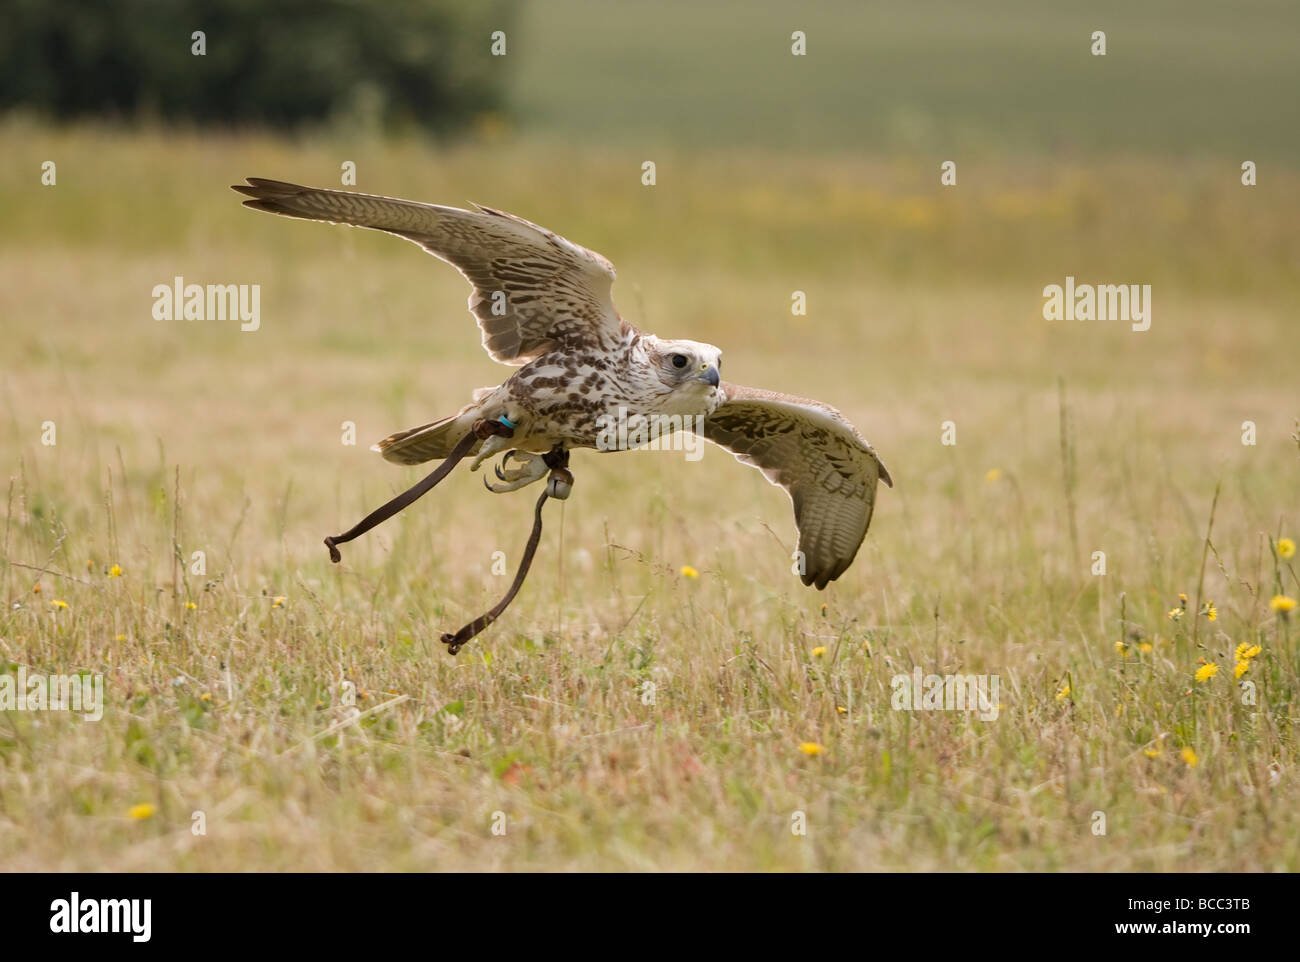 Faucon sacre (Falco cherrug) en vol Banque D'Images